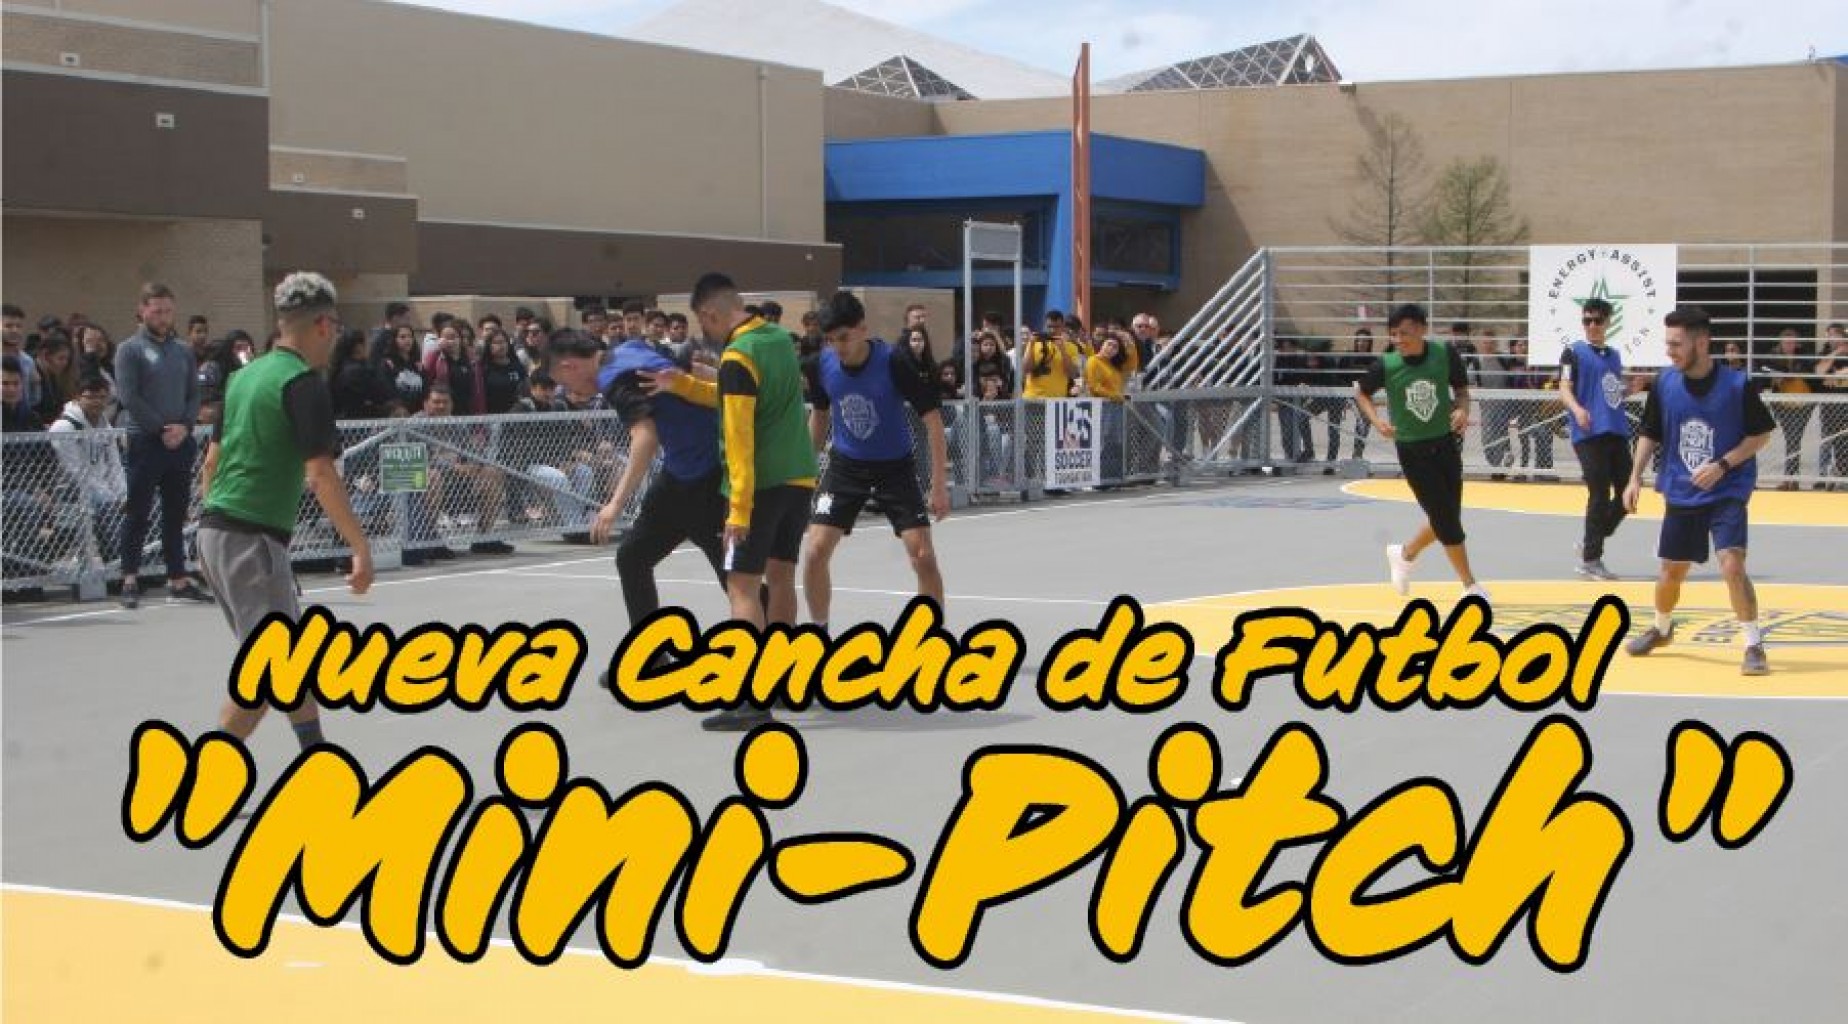 Nueva Cancha de Futbol "Mini-Pitch"